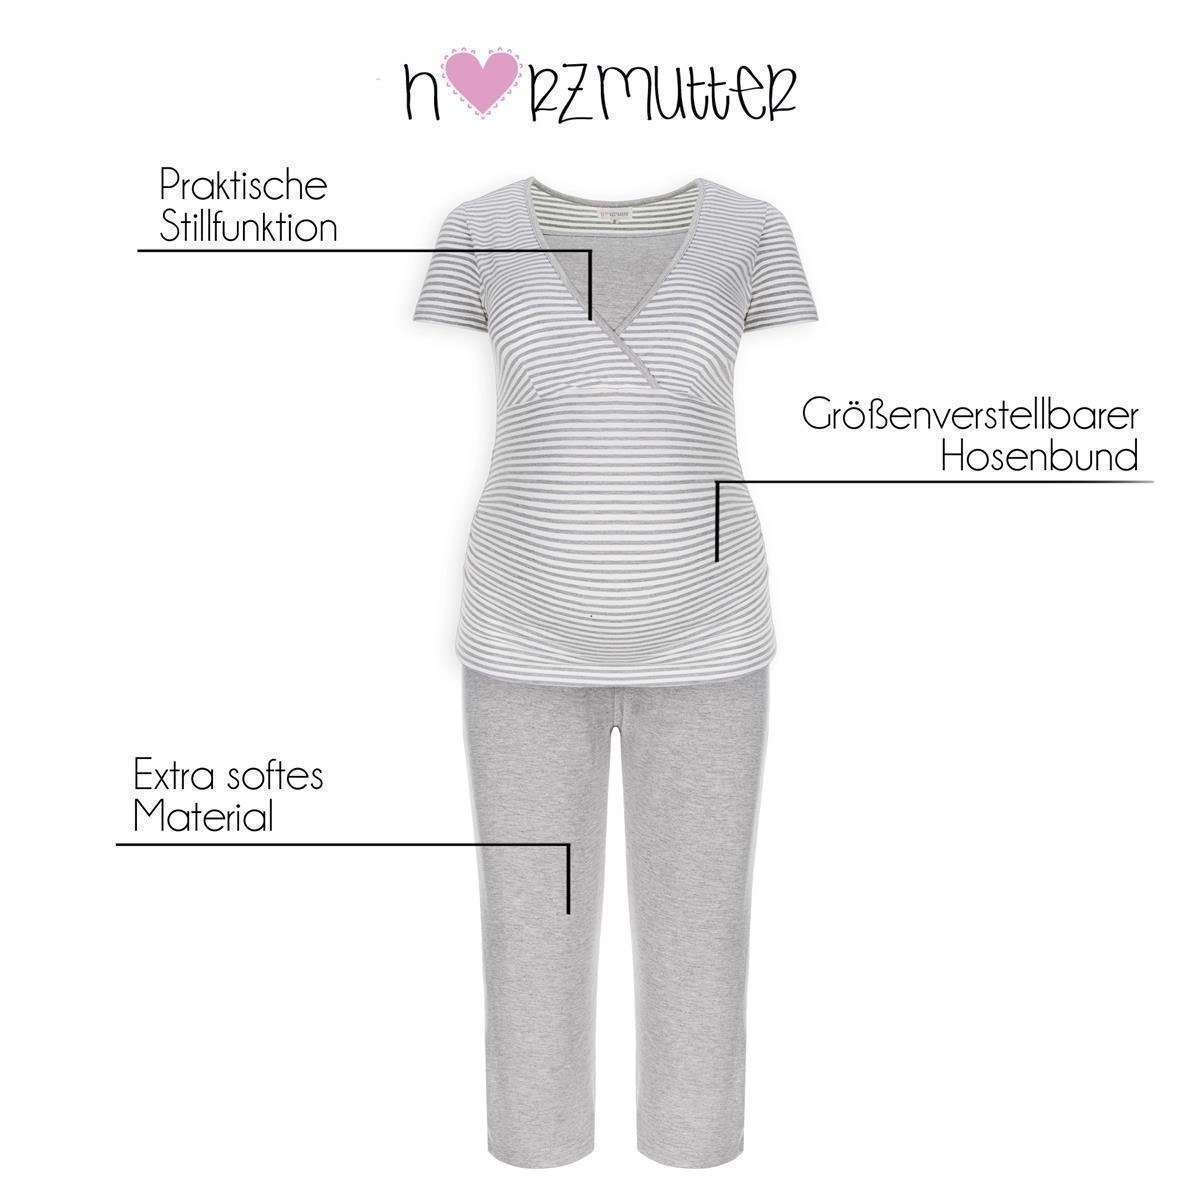 (2 Umstandspyjama Gestreift Stillpyjama Herzmutter - Stillmode tlg) - Weich - Kurz Weiß/Grau